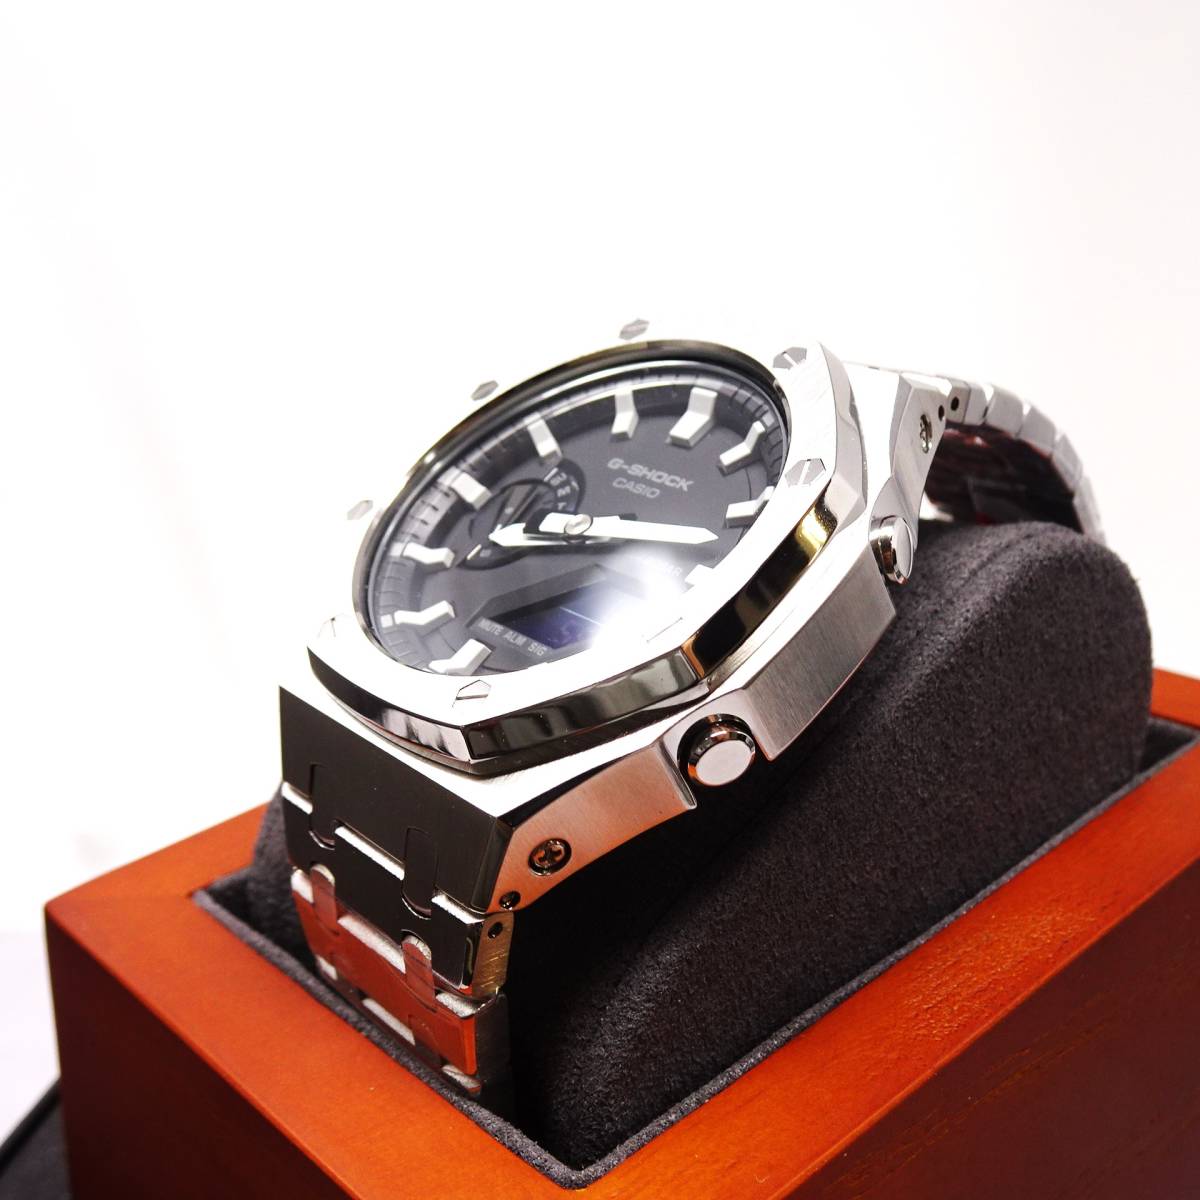 送料無料・新品・Gショックカスタム本体付きGA2100海外オールステンレス製シルバーベゼルベルトモデルメンズ腕時計・カシオーク・の画像3